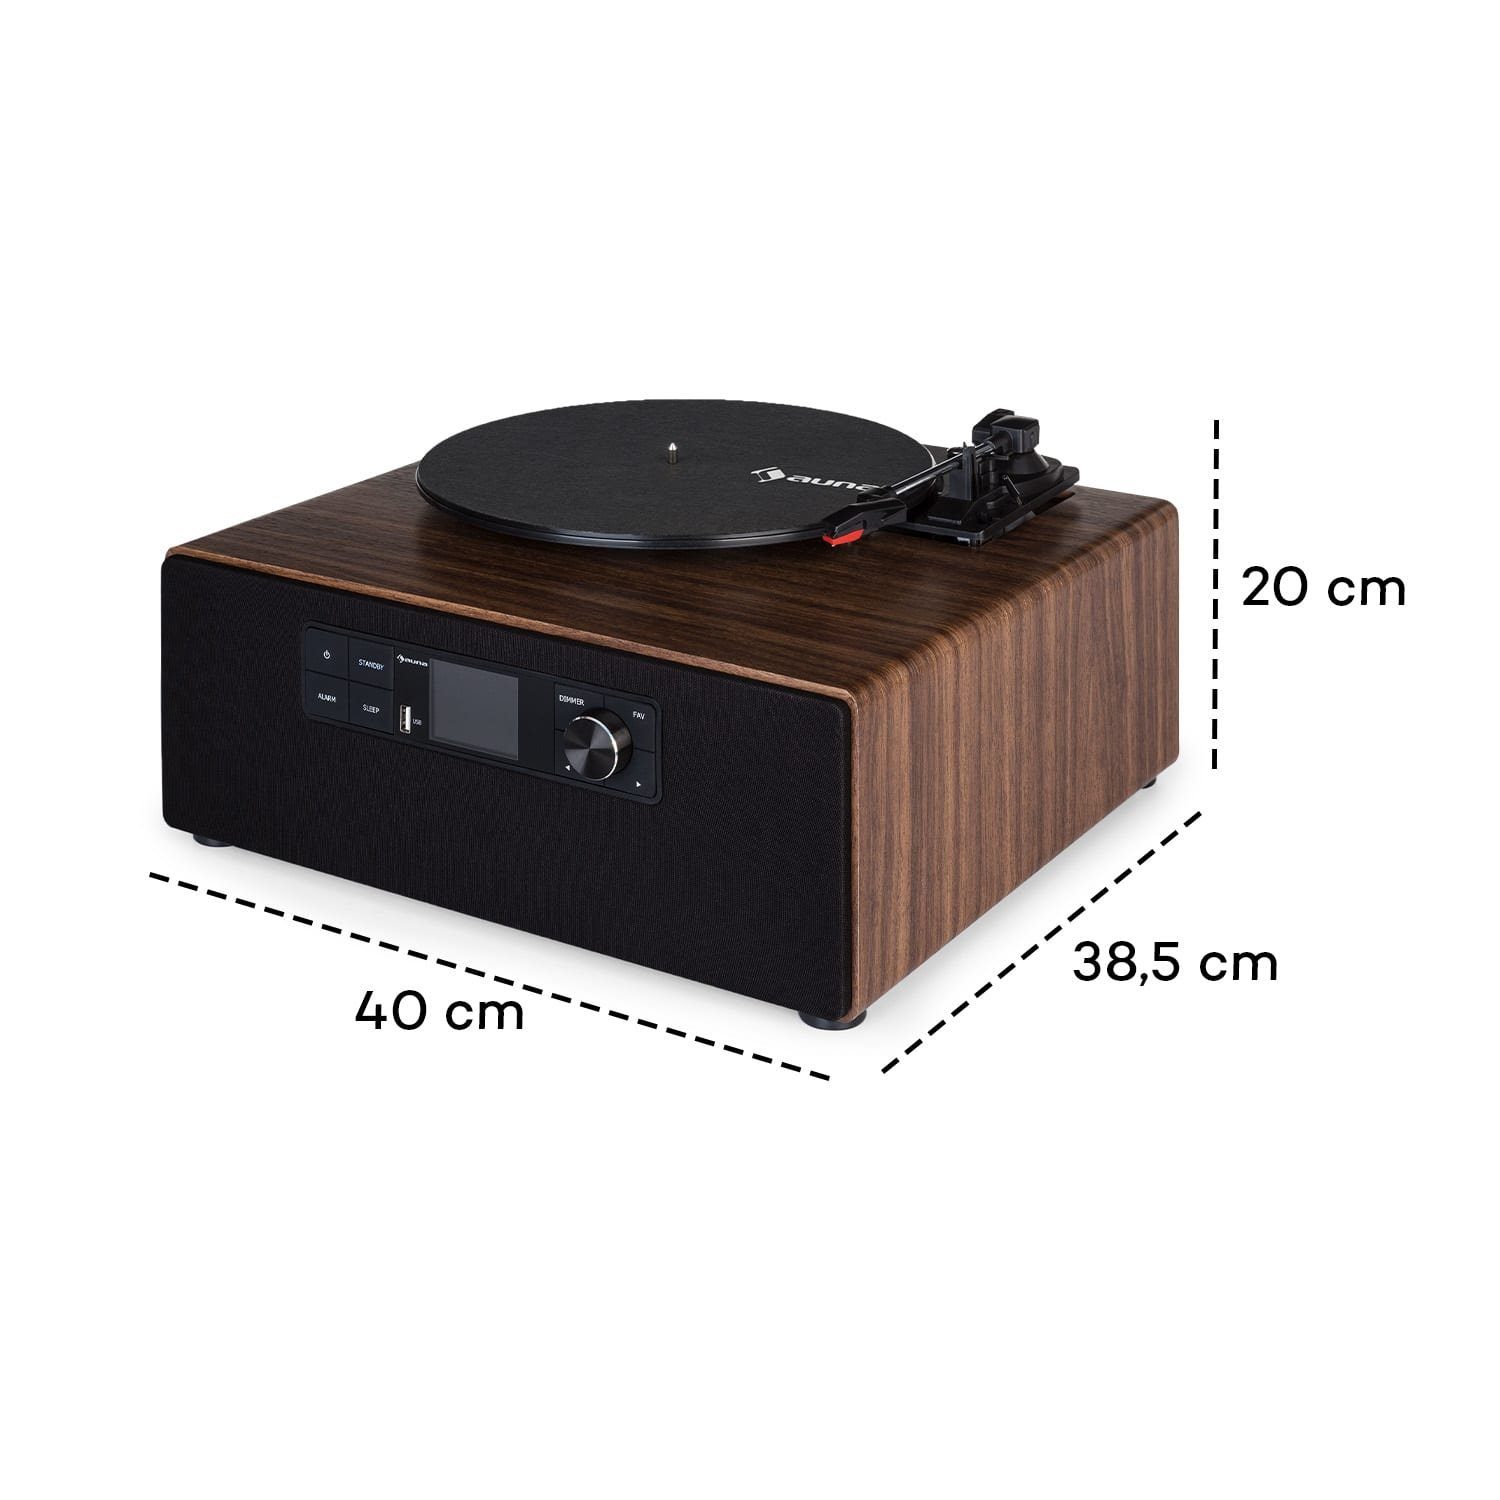 mit Vinyl Auna Schallplattenspieler Radio (Riemenantrieb, Plattenspieler) Bluetooth, Cube Lautsprecher Plattenspieler Connect Vinyl